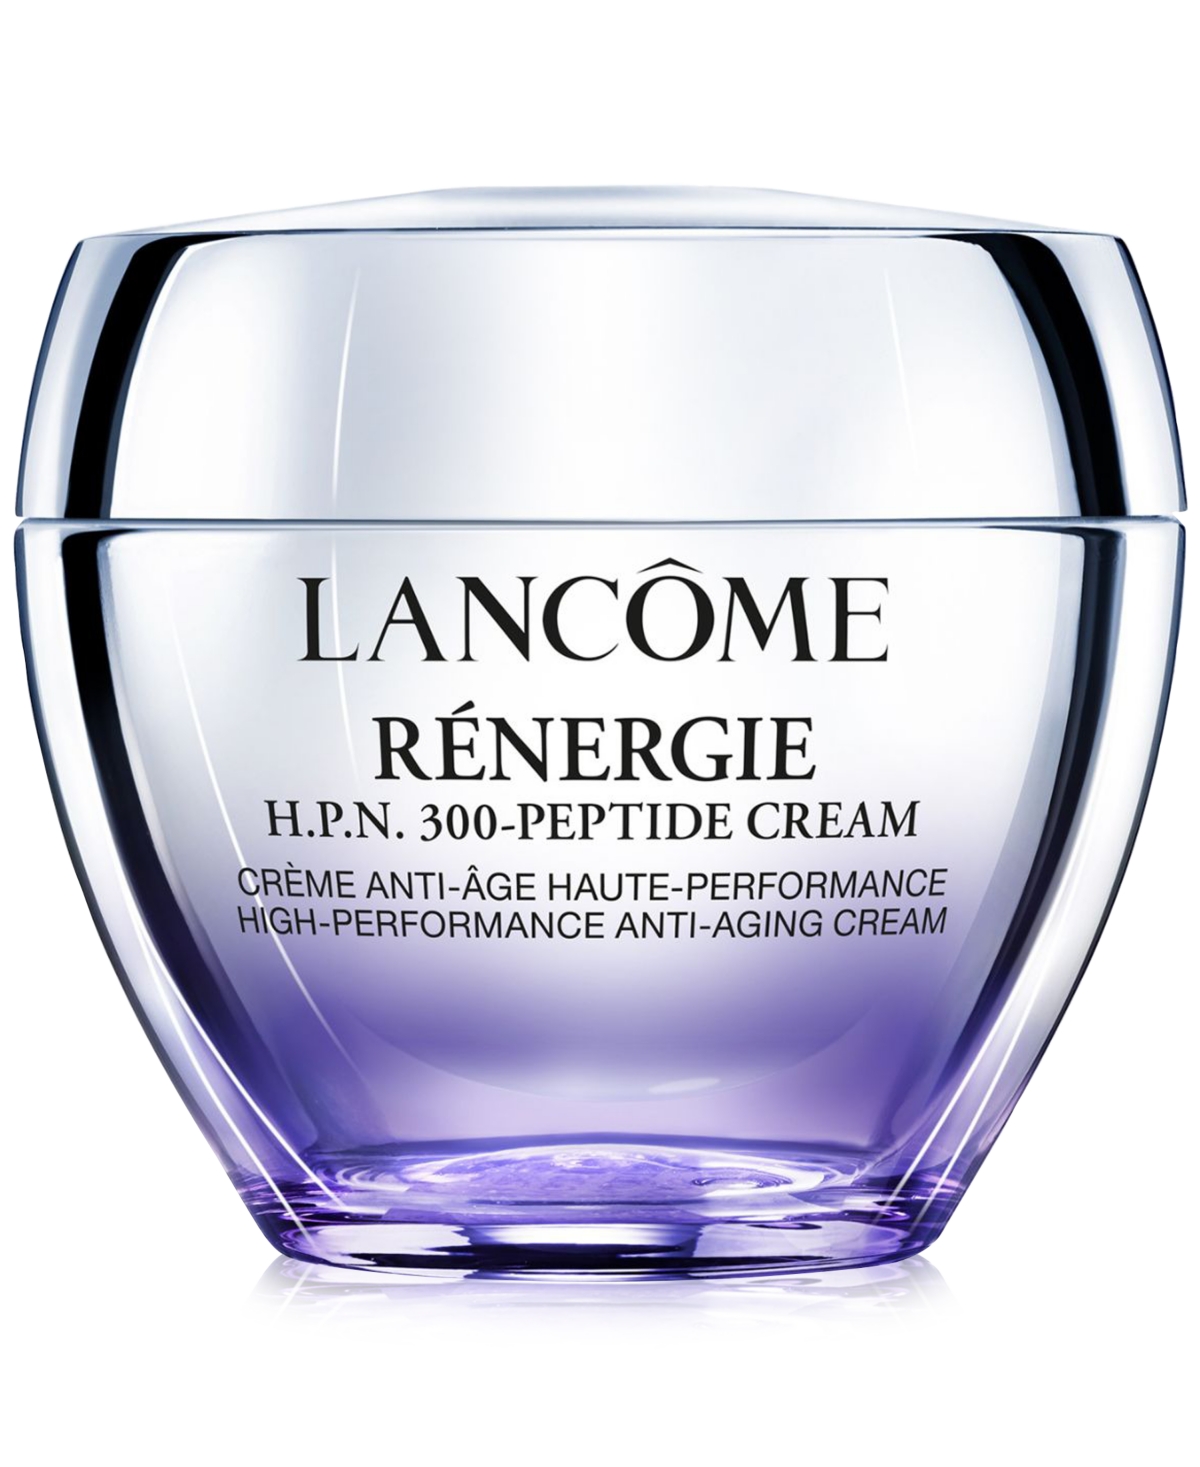 Lancôme Renergie H.p.n. 300-peptide Cream